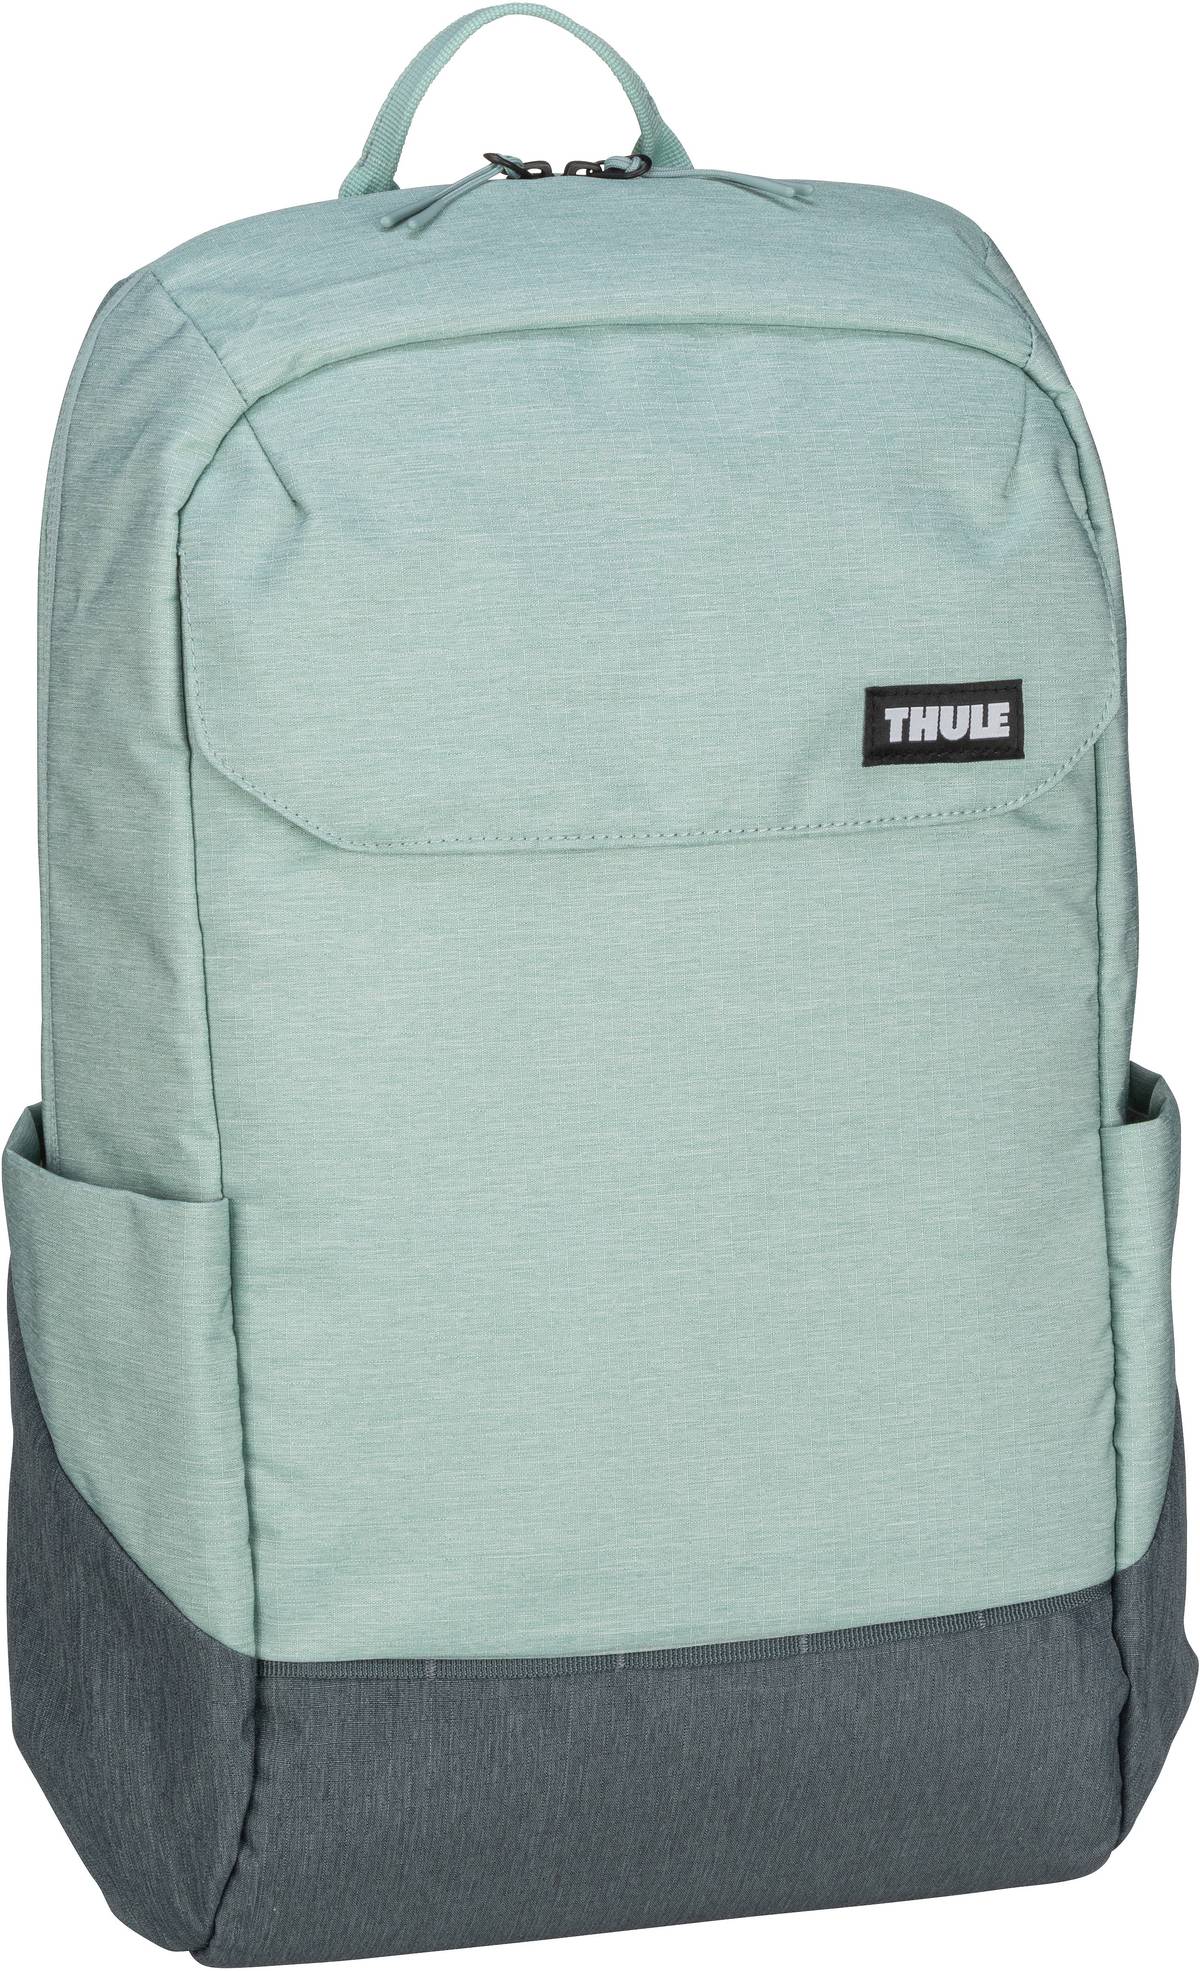 Thule Lithos Backpack 20L  in Blau (20 Liter), Rucksack / Backpack